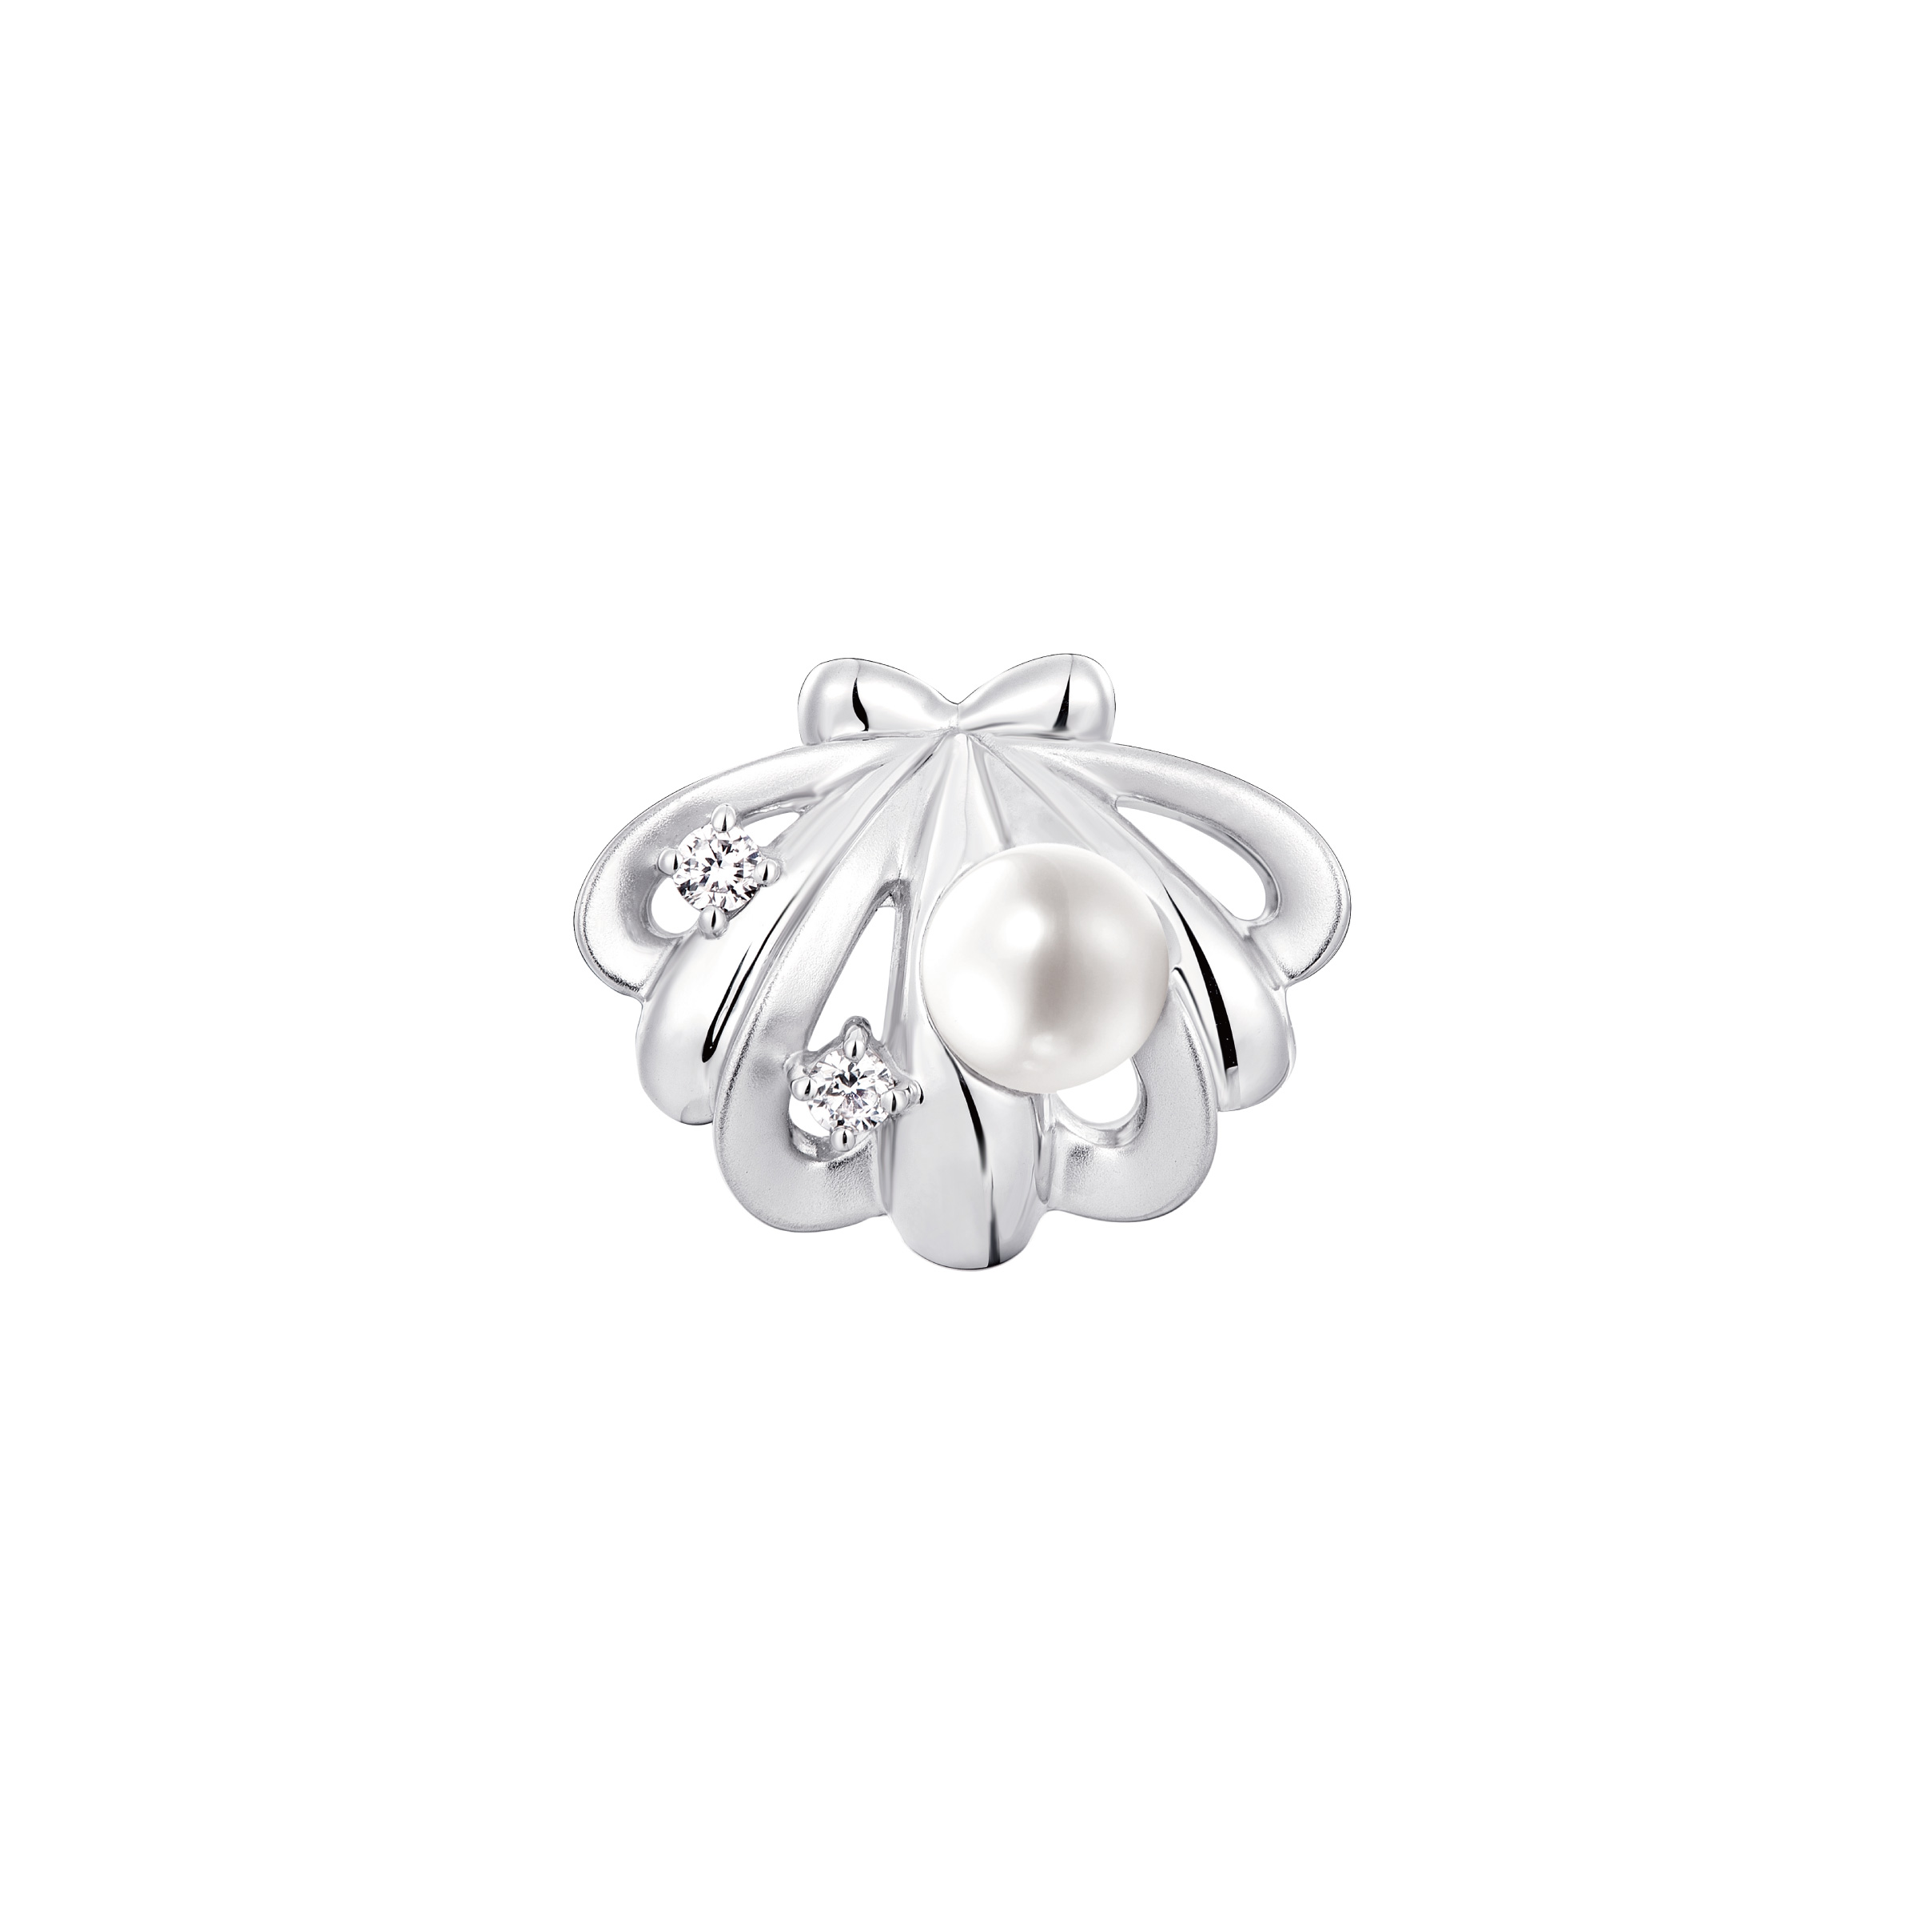 Dear Q "Seashell" 18K White Gold Diamond Charm with Pearl